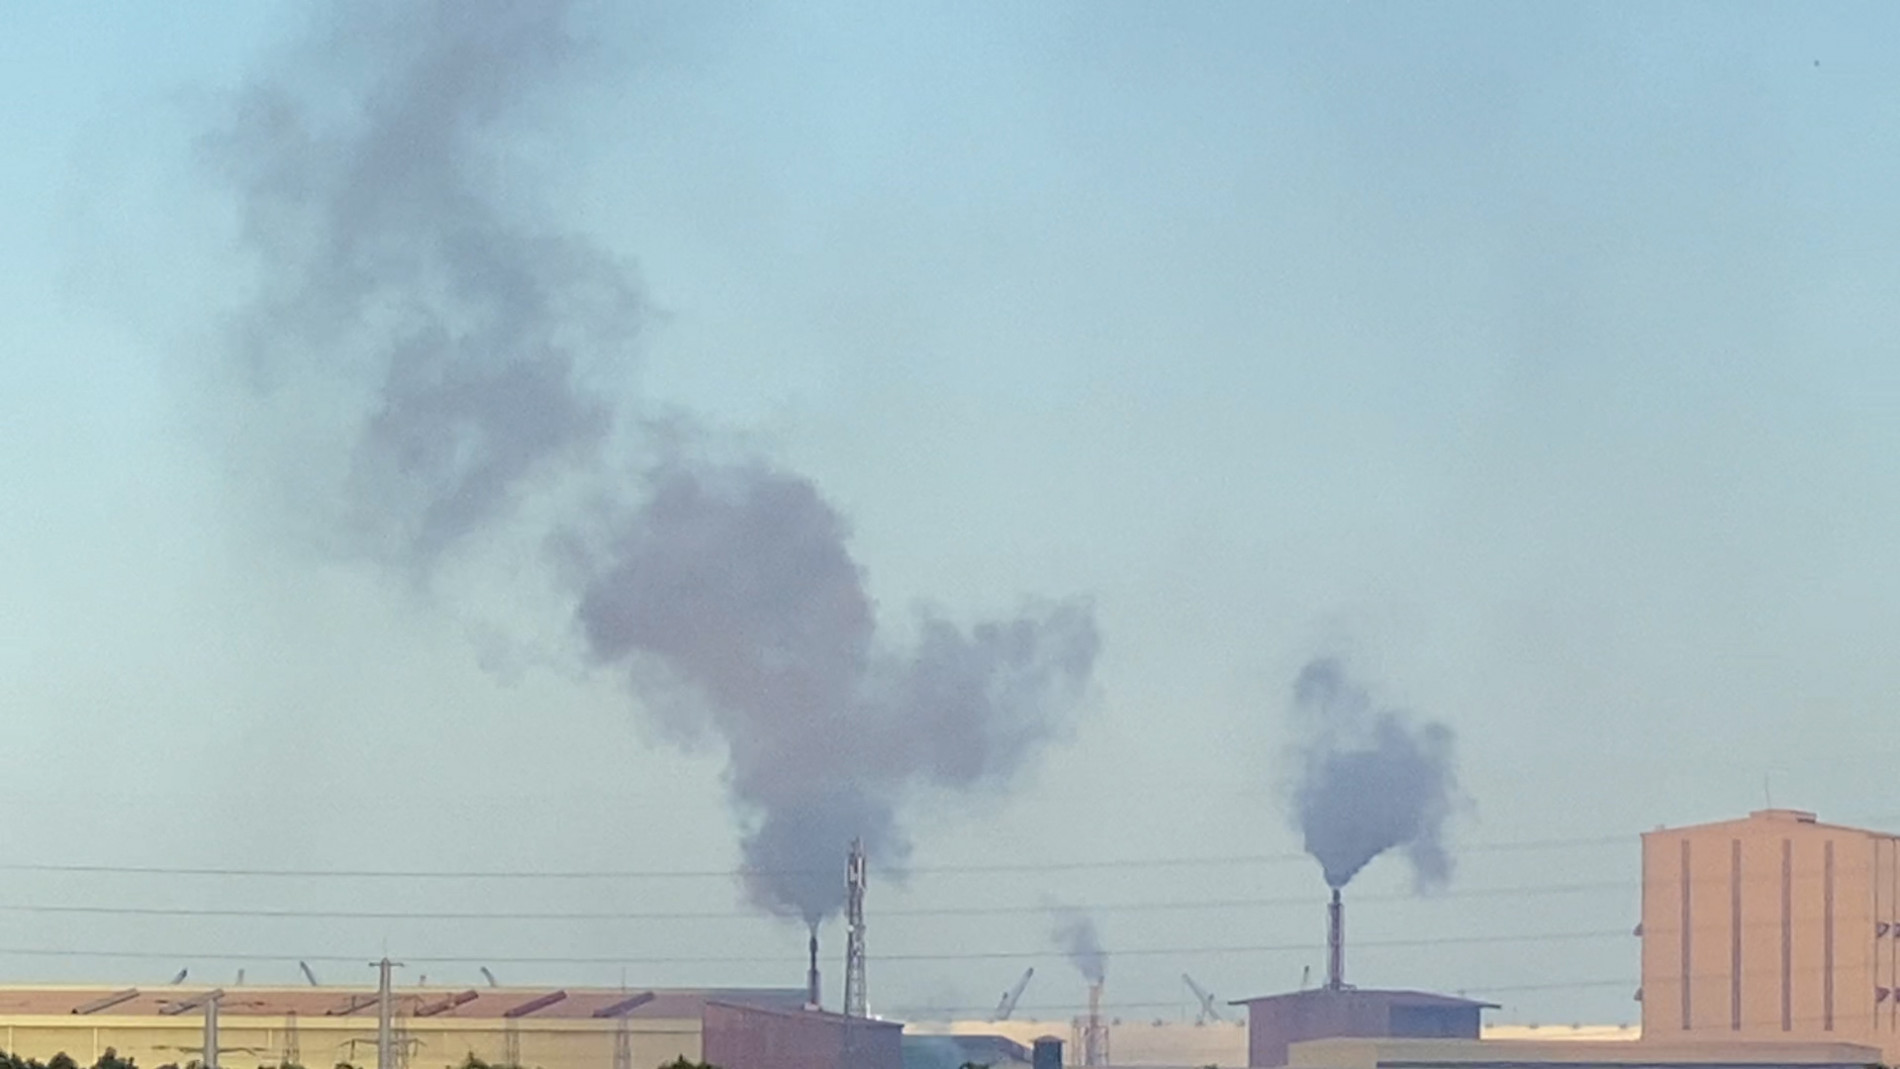 Khói mù mịt từ nhà máy khu công nghiệp, người dân kêu trời vì mùi hóa chất - Ảnh 2.